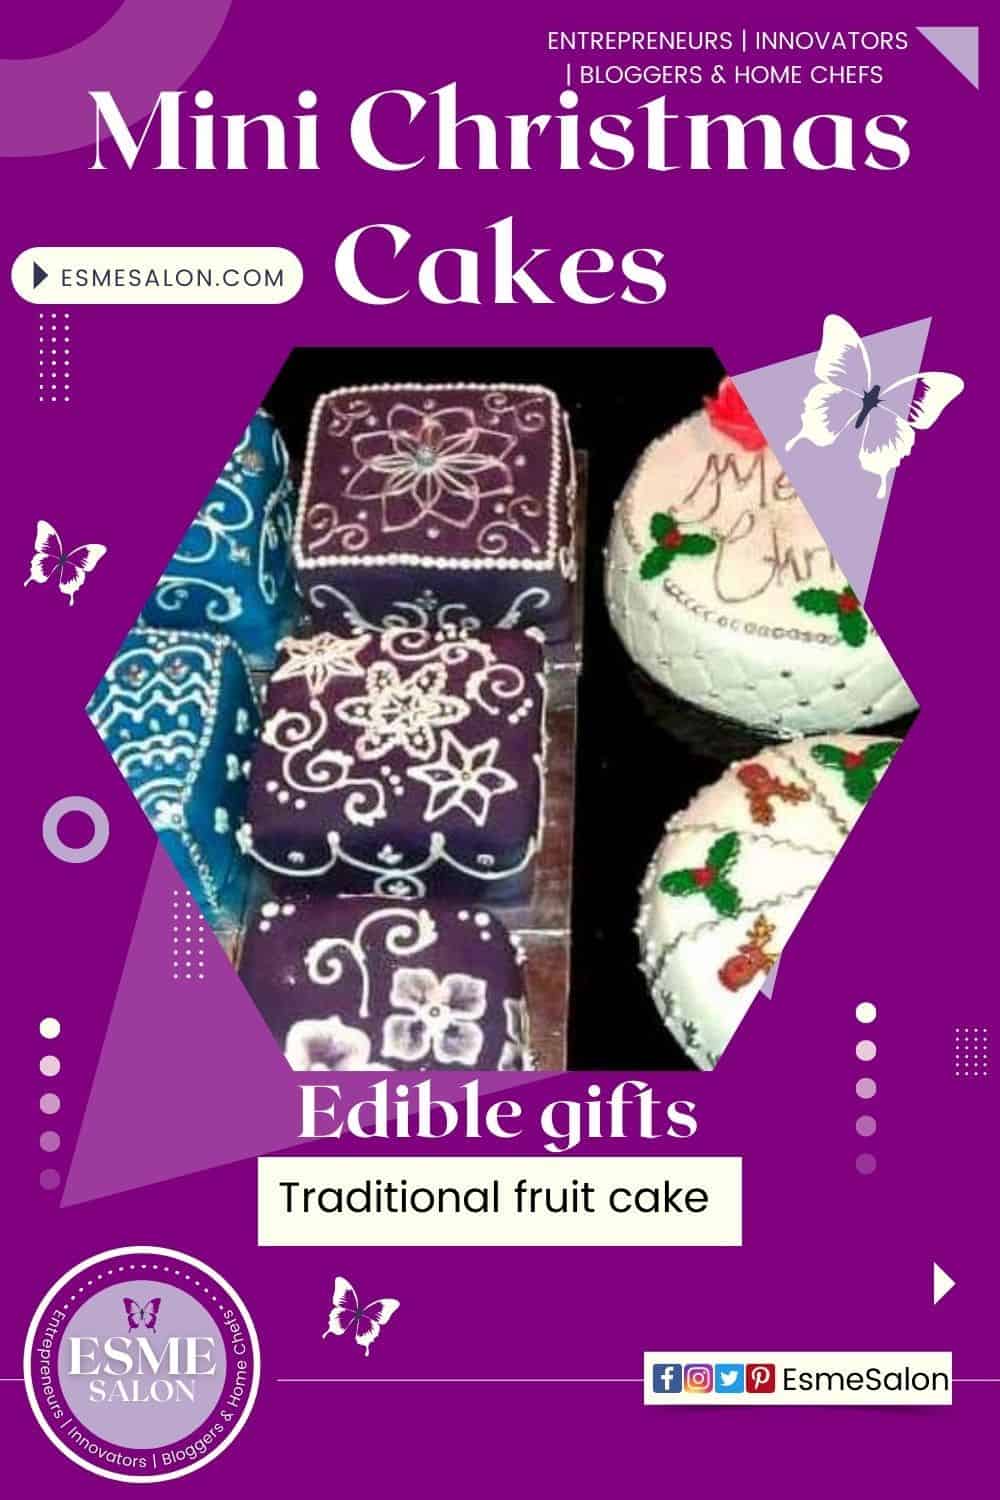 Mini Christmas Cakes, small edible and traditional fruit Christmas cakes